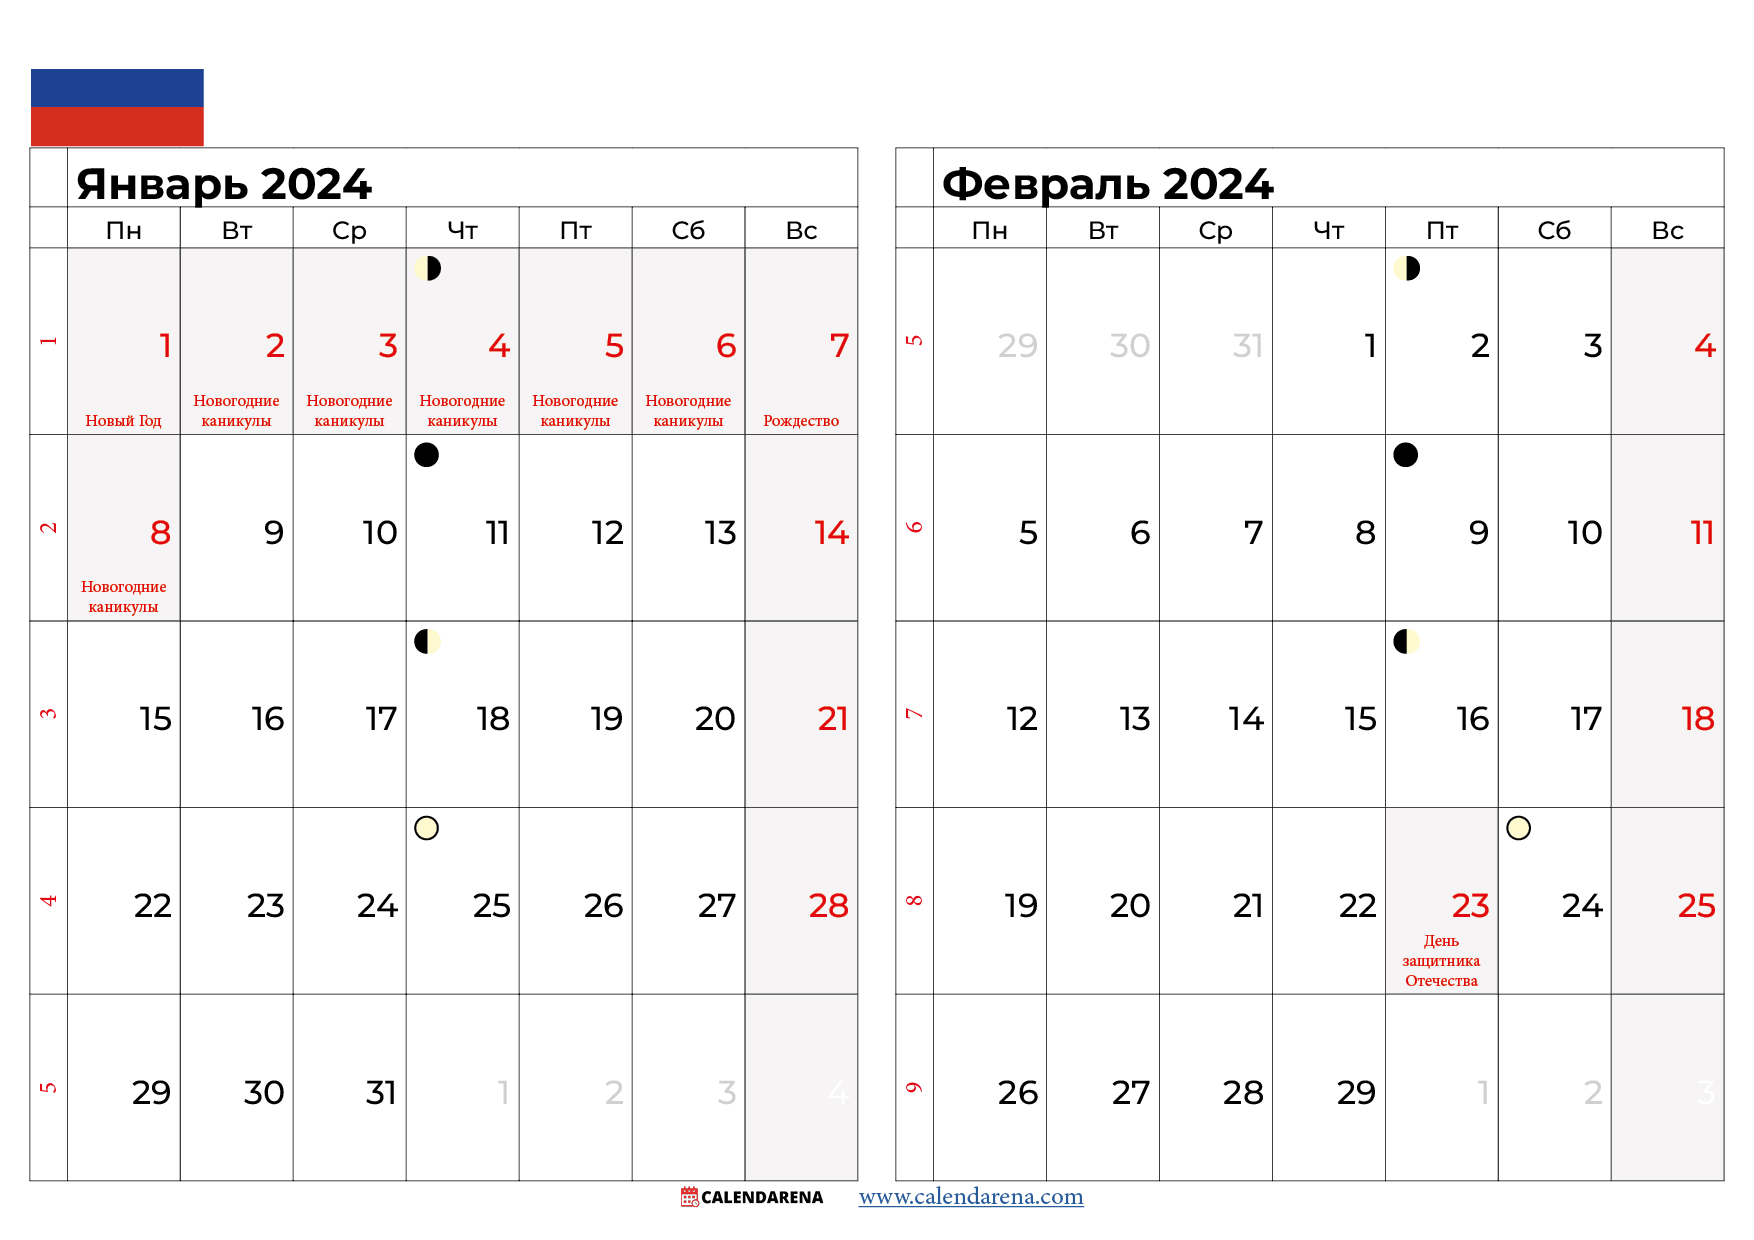 Календарь на январь-февраль 2024 года